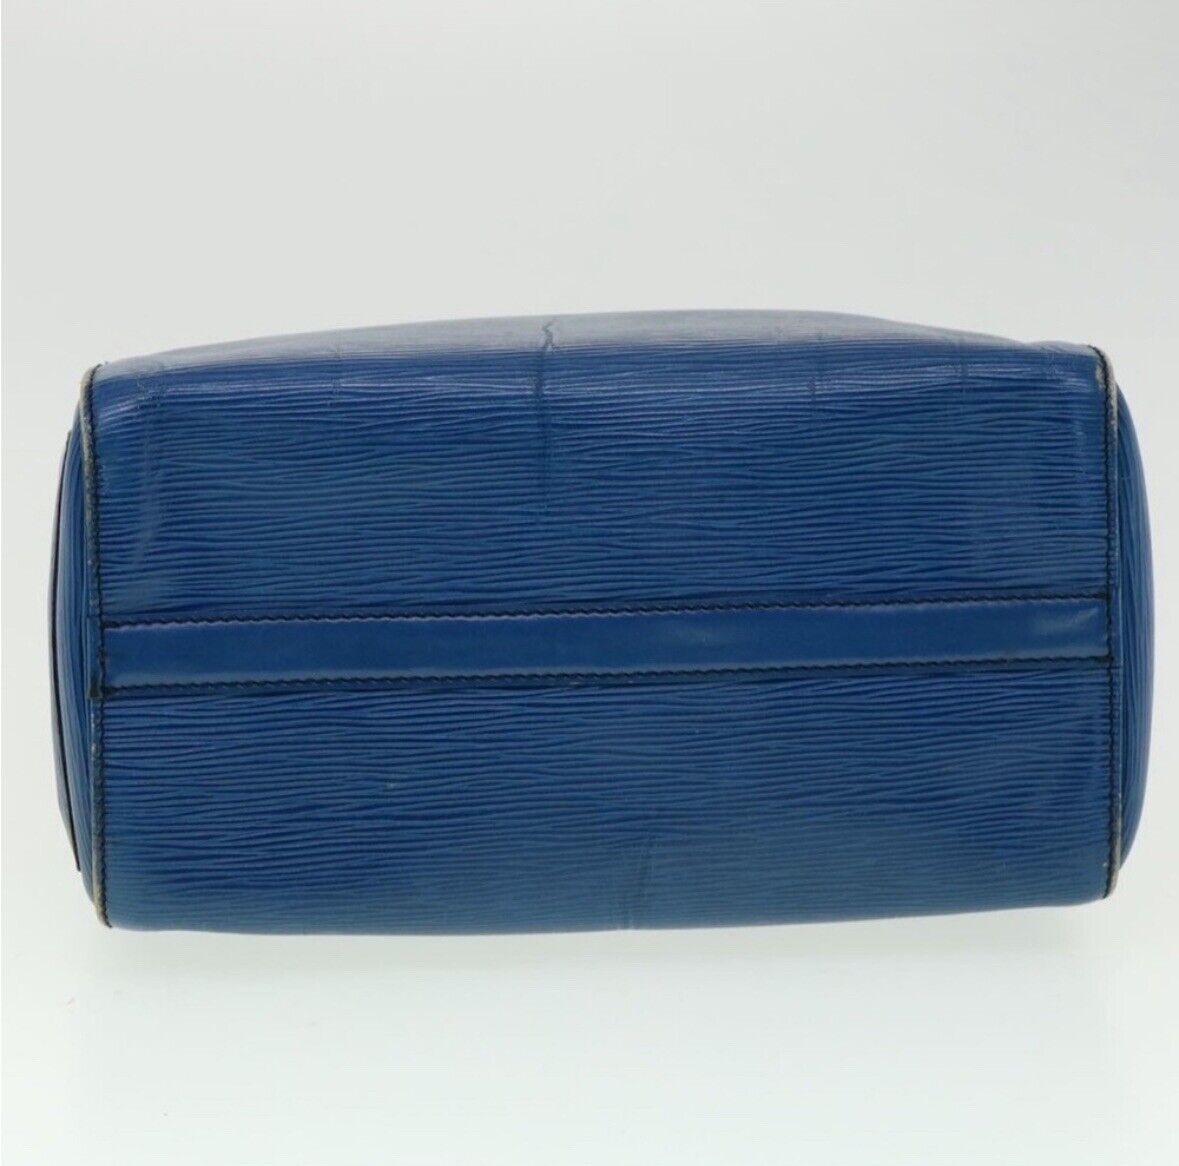 Louis Vuitton Speedy Shoulder Bag Blue Leather - image 6